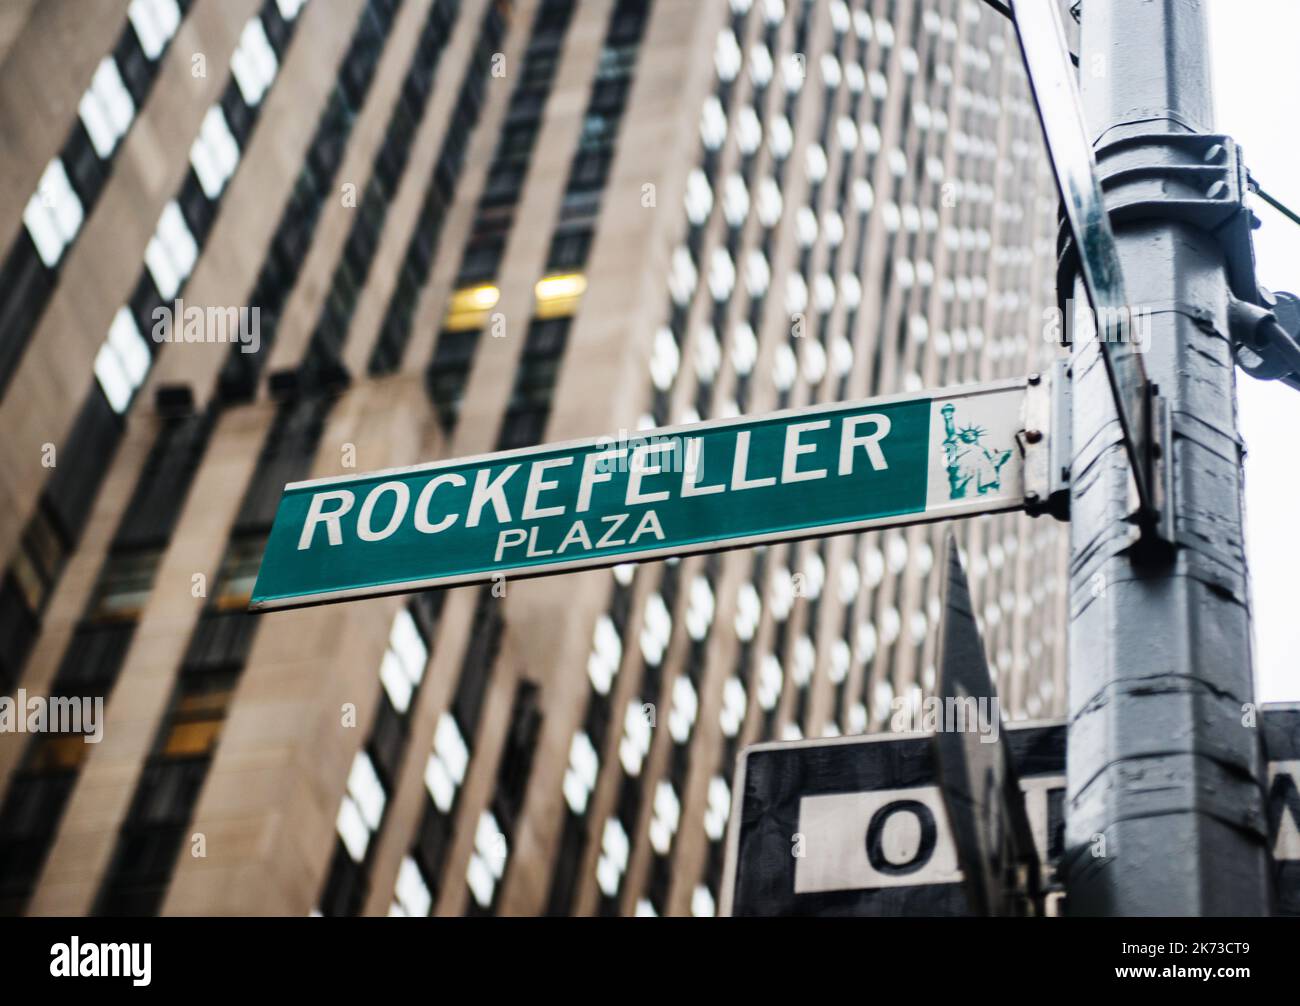 Street sign for Rockefeller plaza, Manhattan, New York City Stock Photo